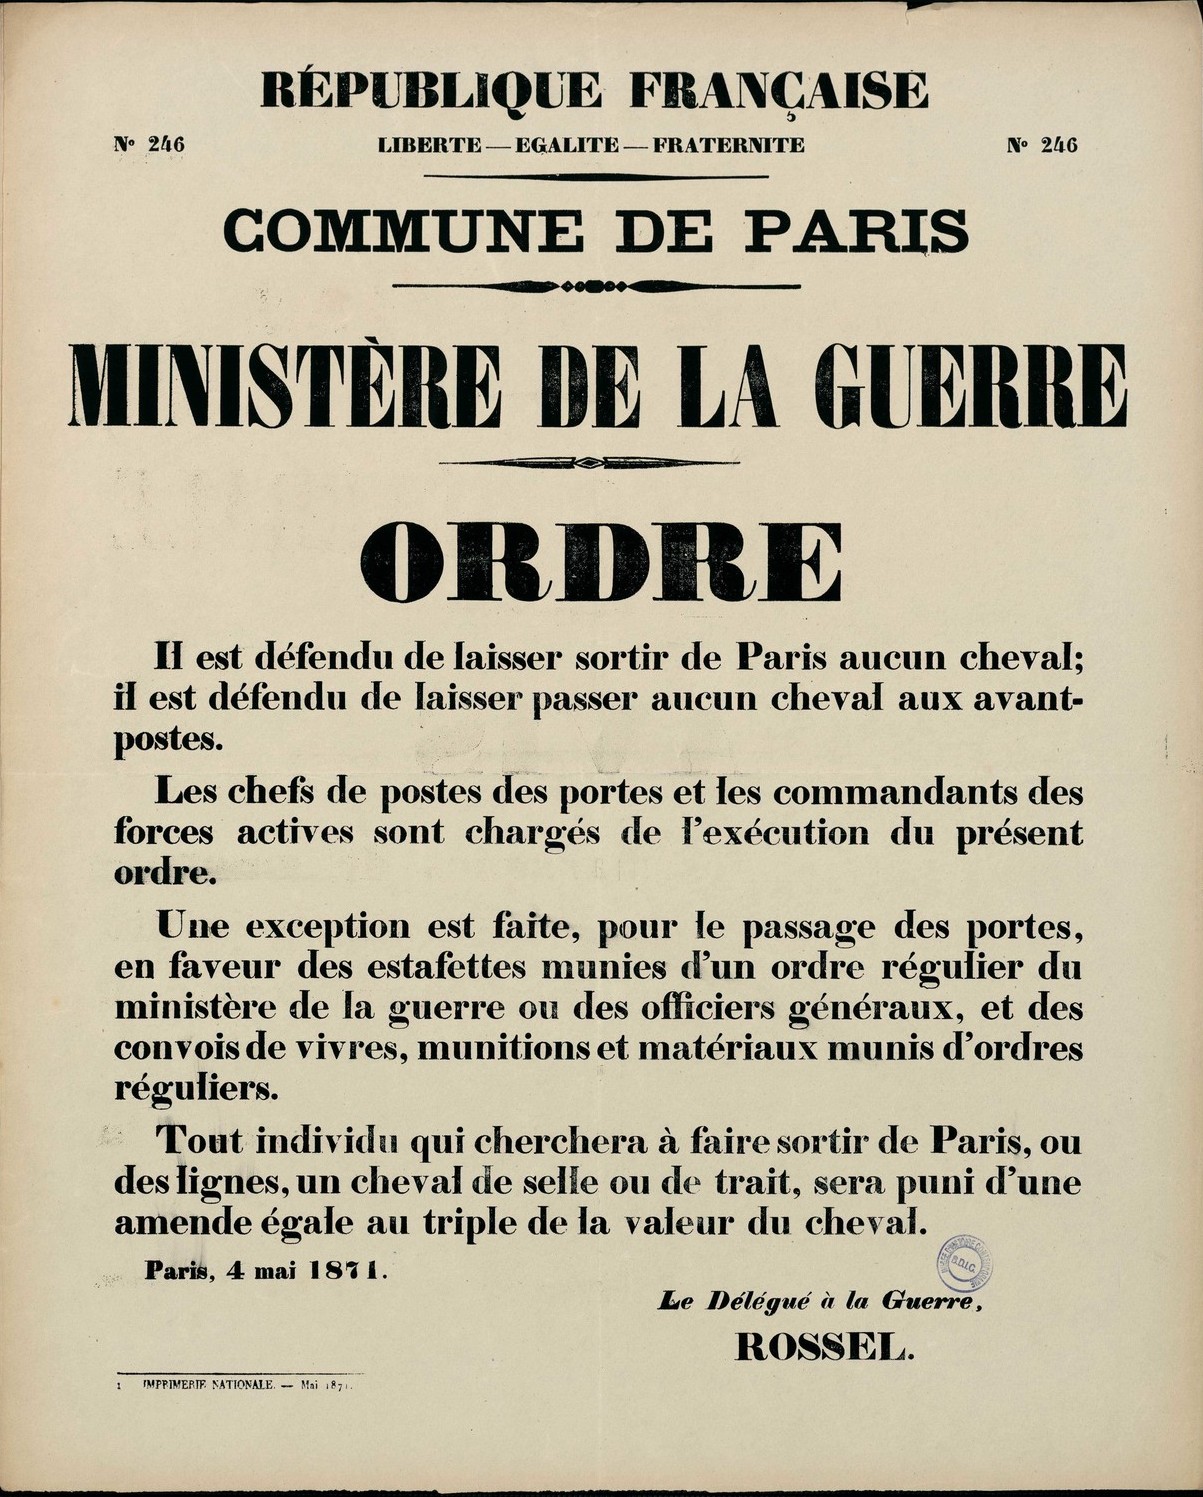 Affiche de la Commune de Paris N° 246 du 4 mai 1871 - Ordre du Délégué à la Guerre Rossel (Source : argonnaute.parisnanterre.fr)